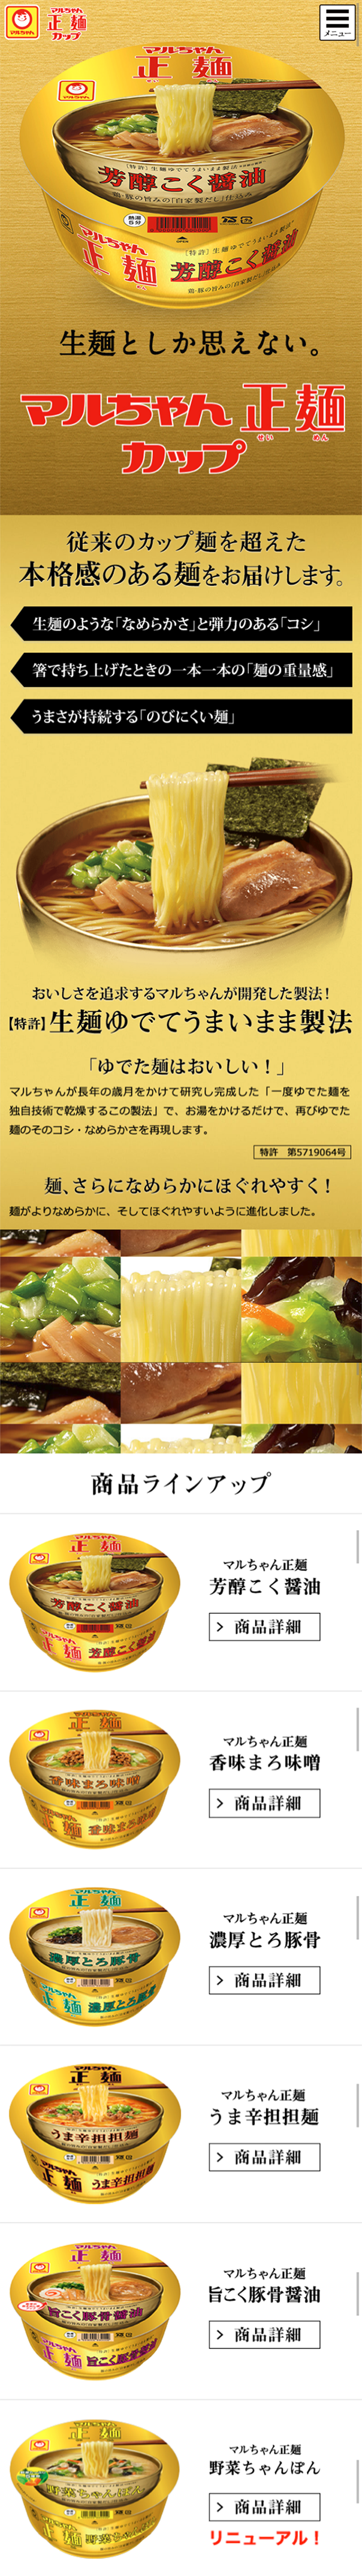 マルちゃん正麺カップ_sp_1